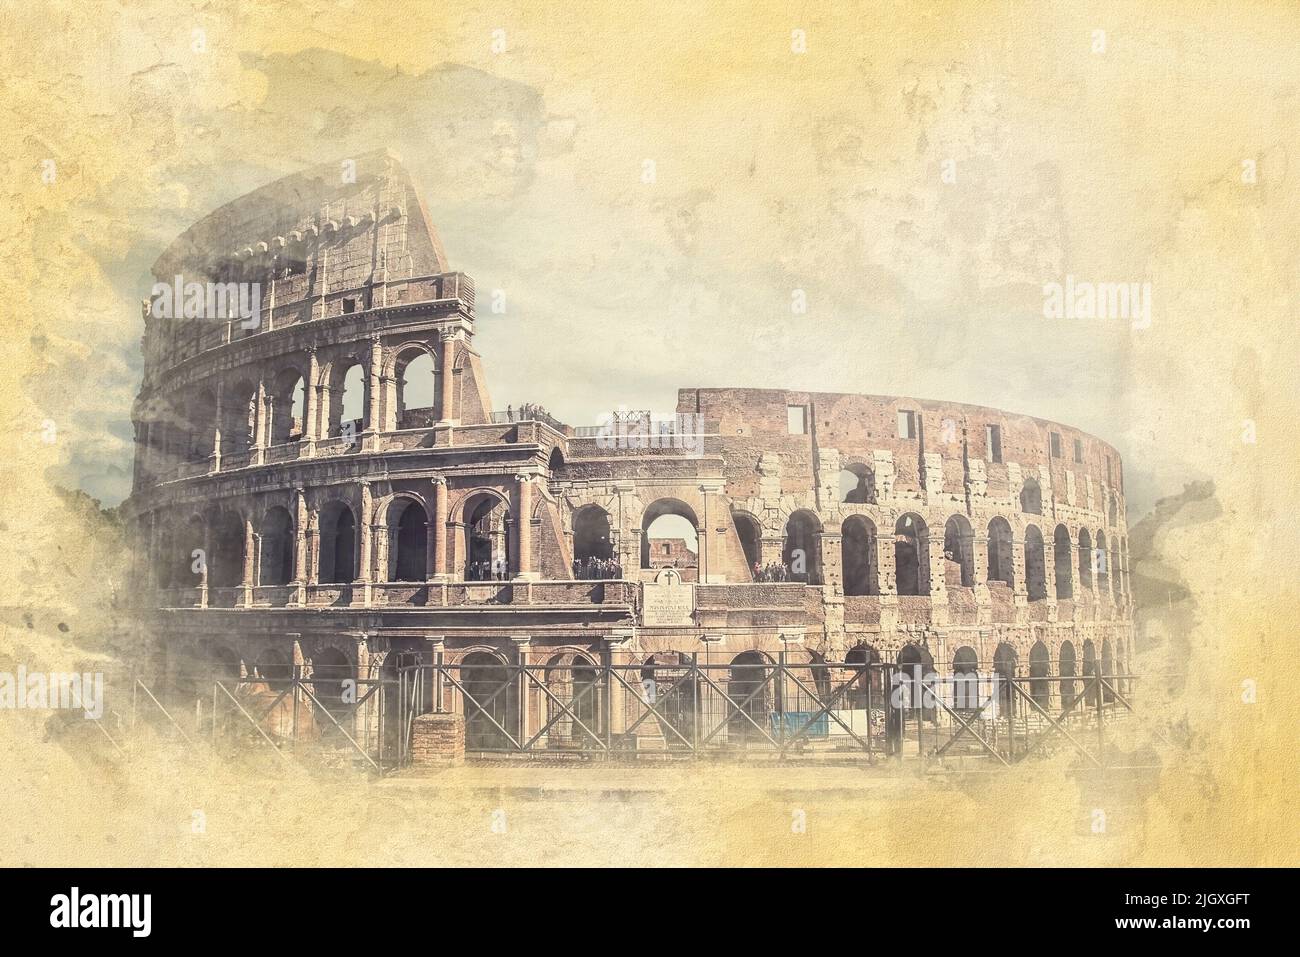 El Coliseo de Roma - ilustración del efecto de acuarela Foto de stock